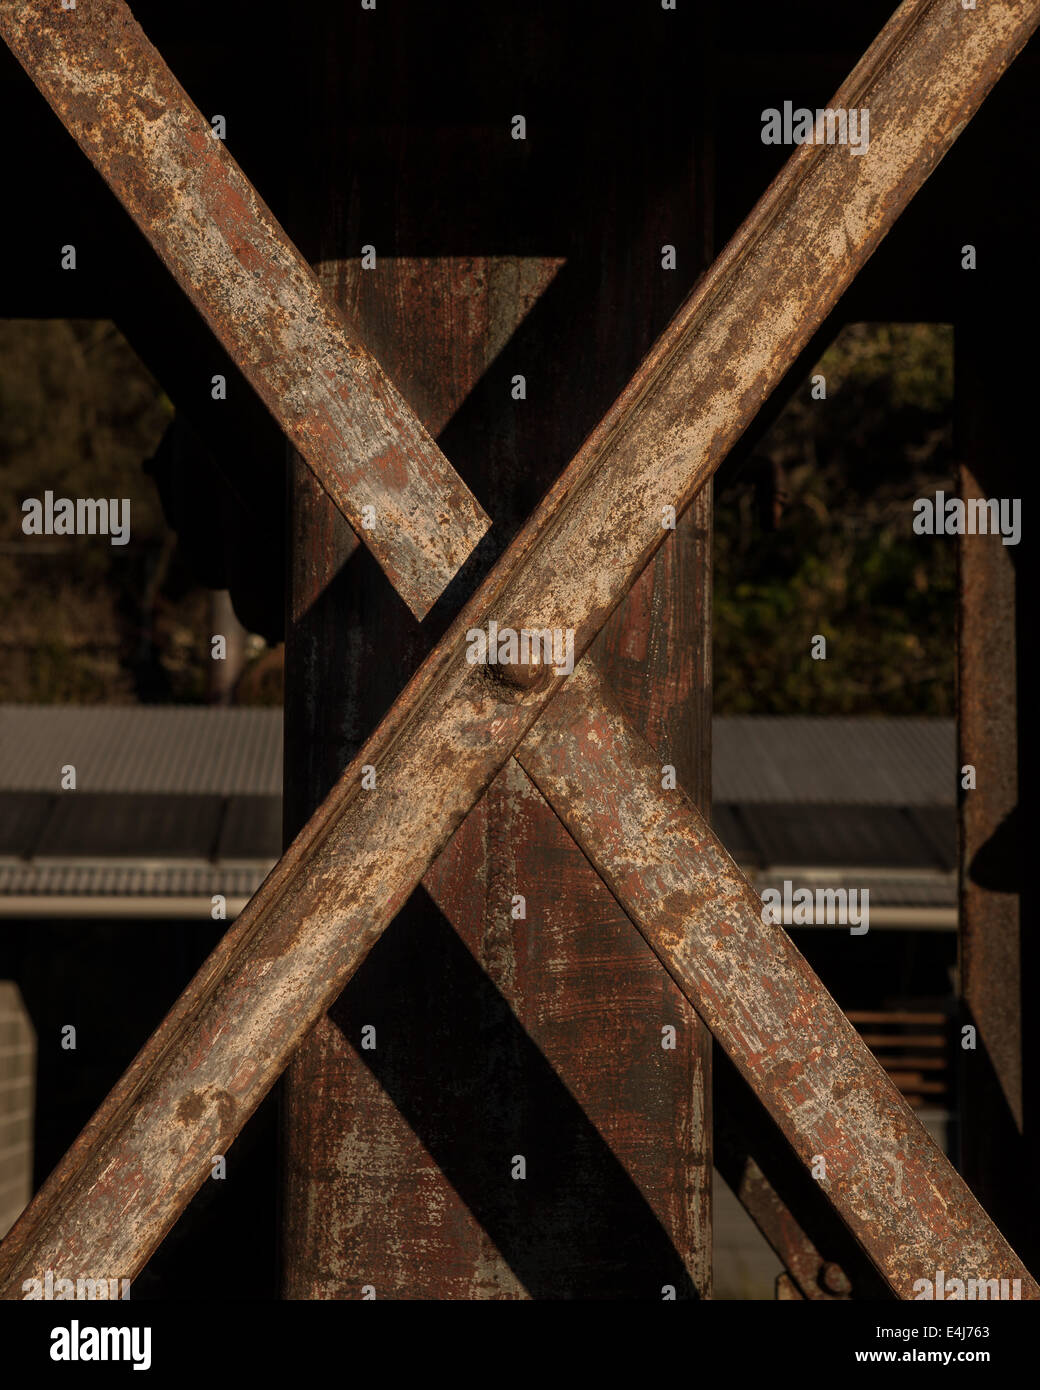 Industrial Metal girders in an 'X' shape Stock Photo